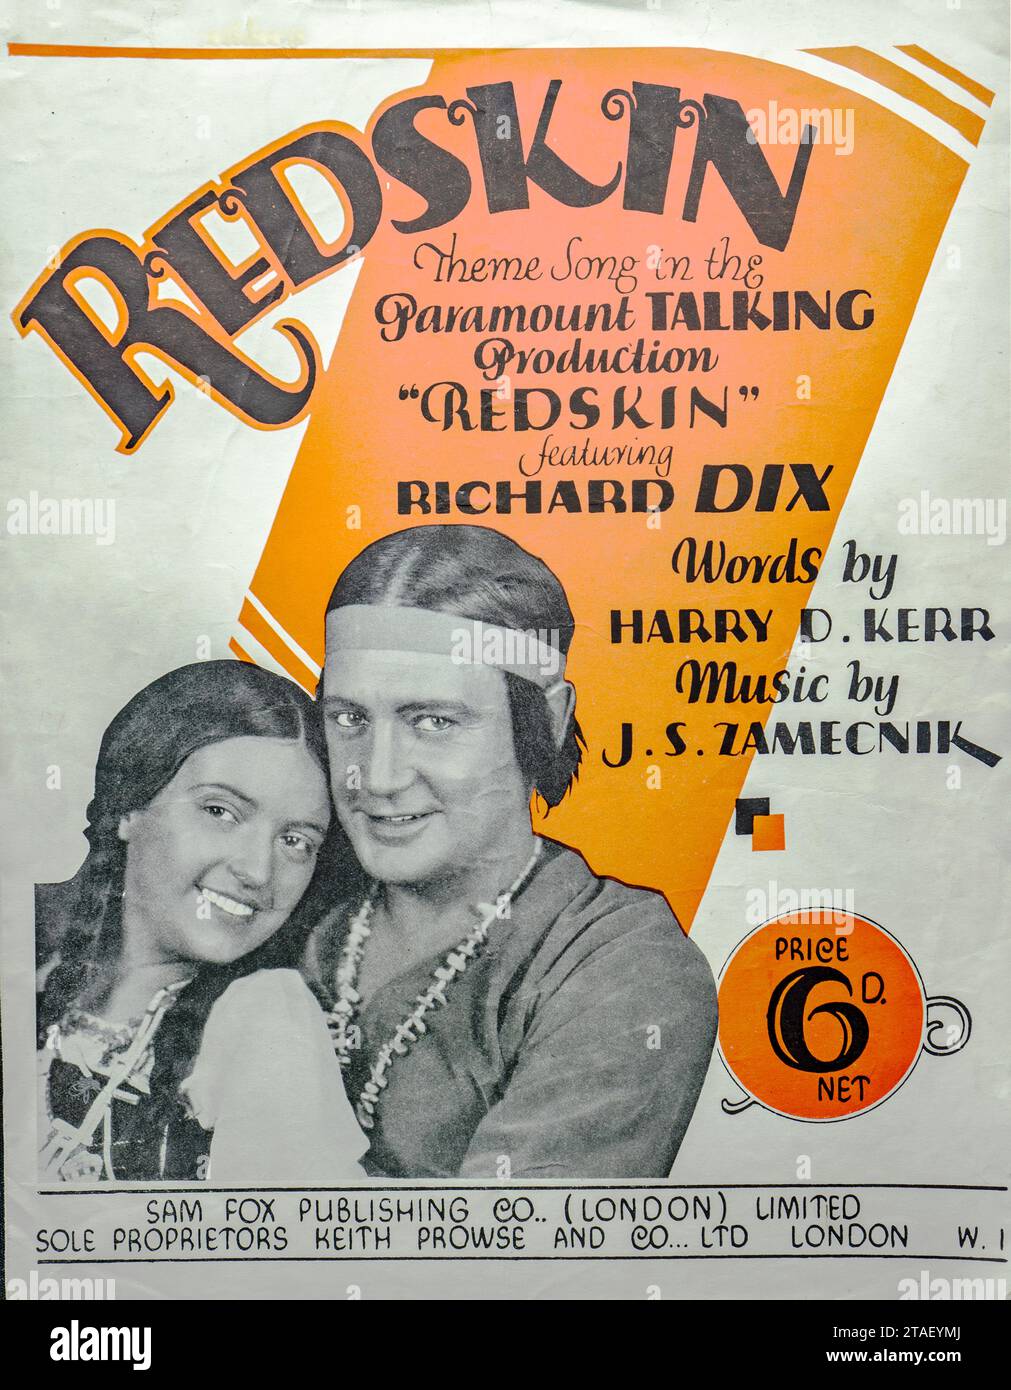 Feuille de musique de film des années 1920 avec Richard dix et des images amérindiennes. Partition de musique cinématique - ''Redskin' Theme Song”.. Banque D'Images